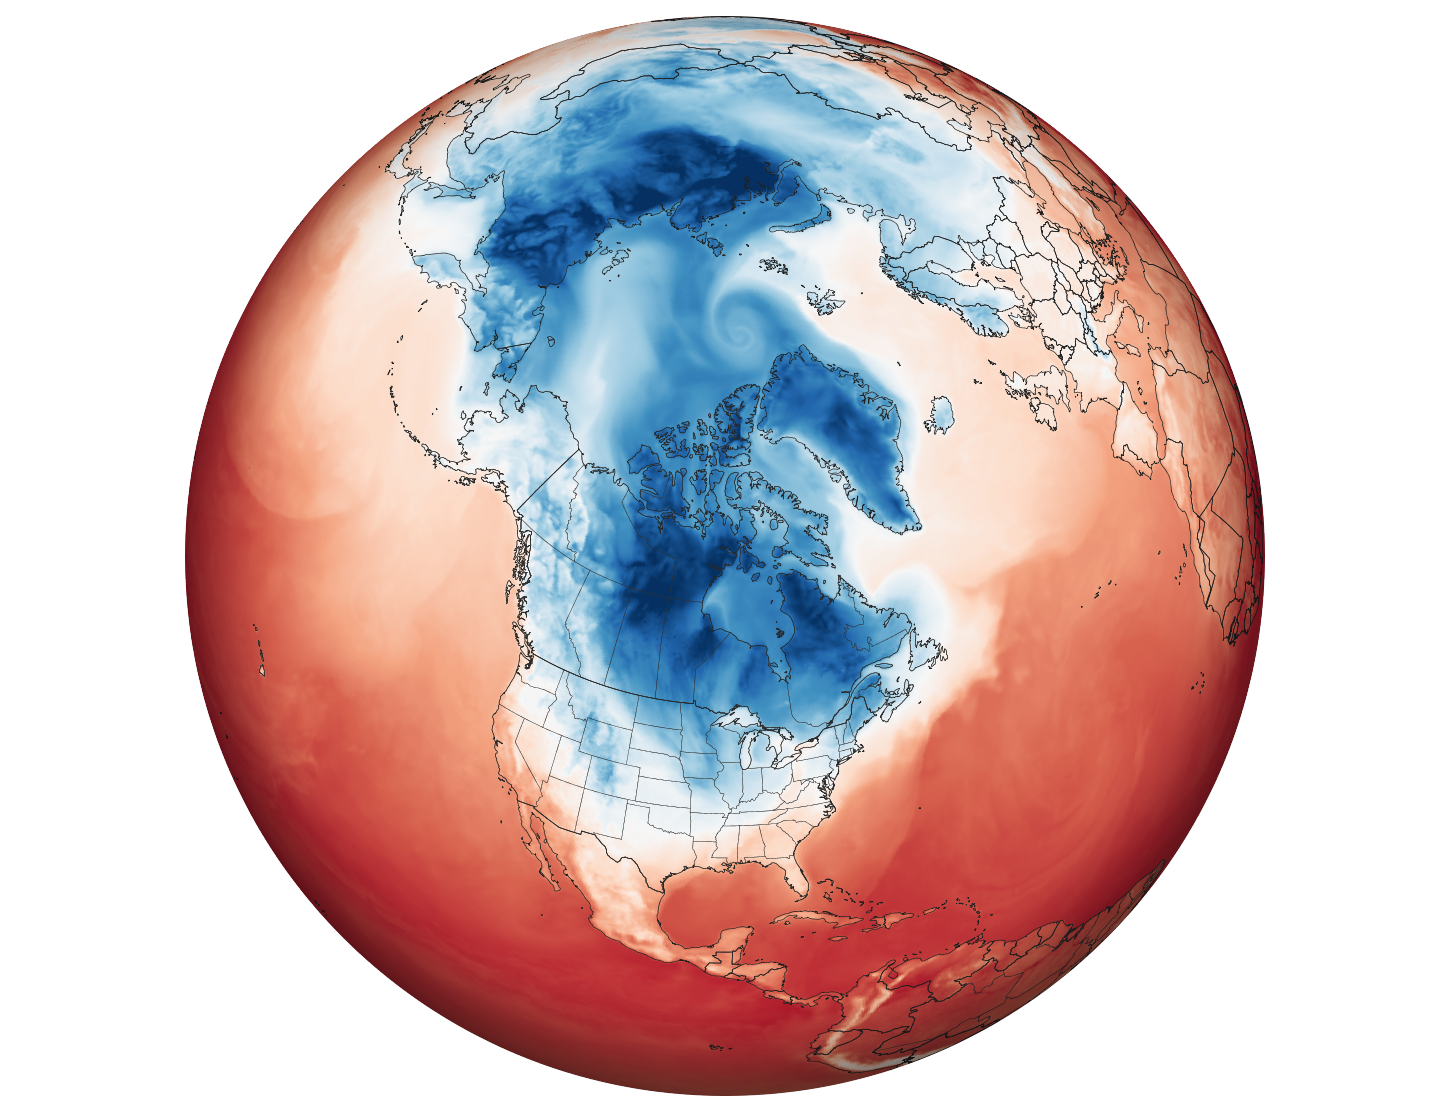 polar vortex in canada and america